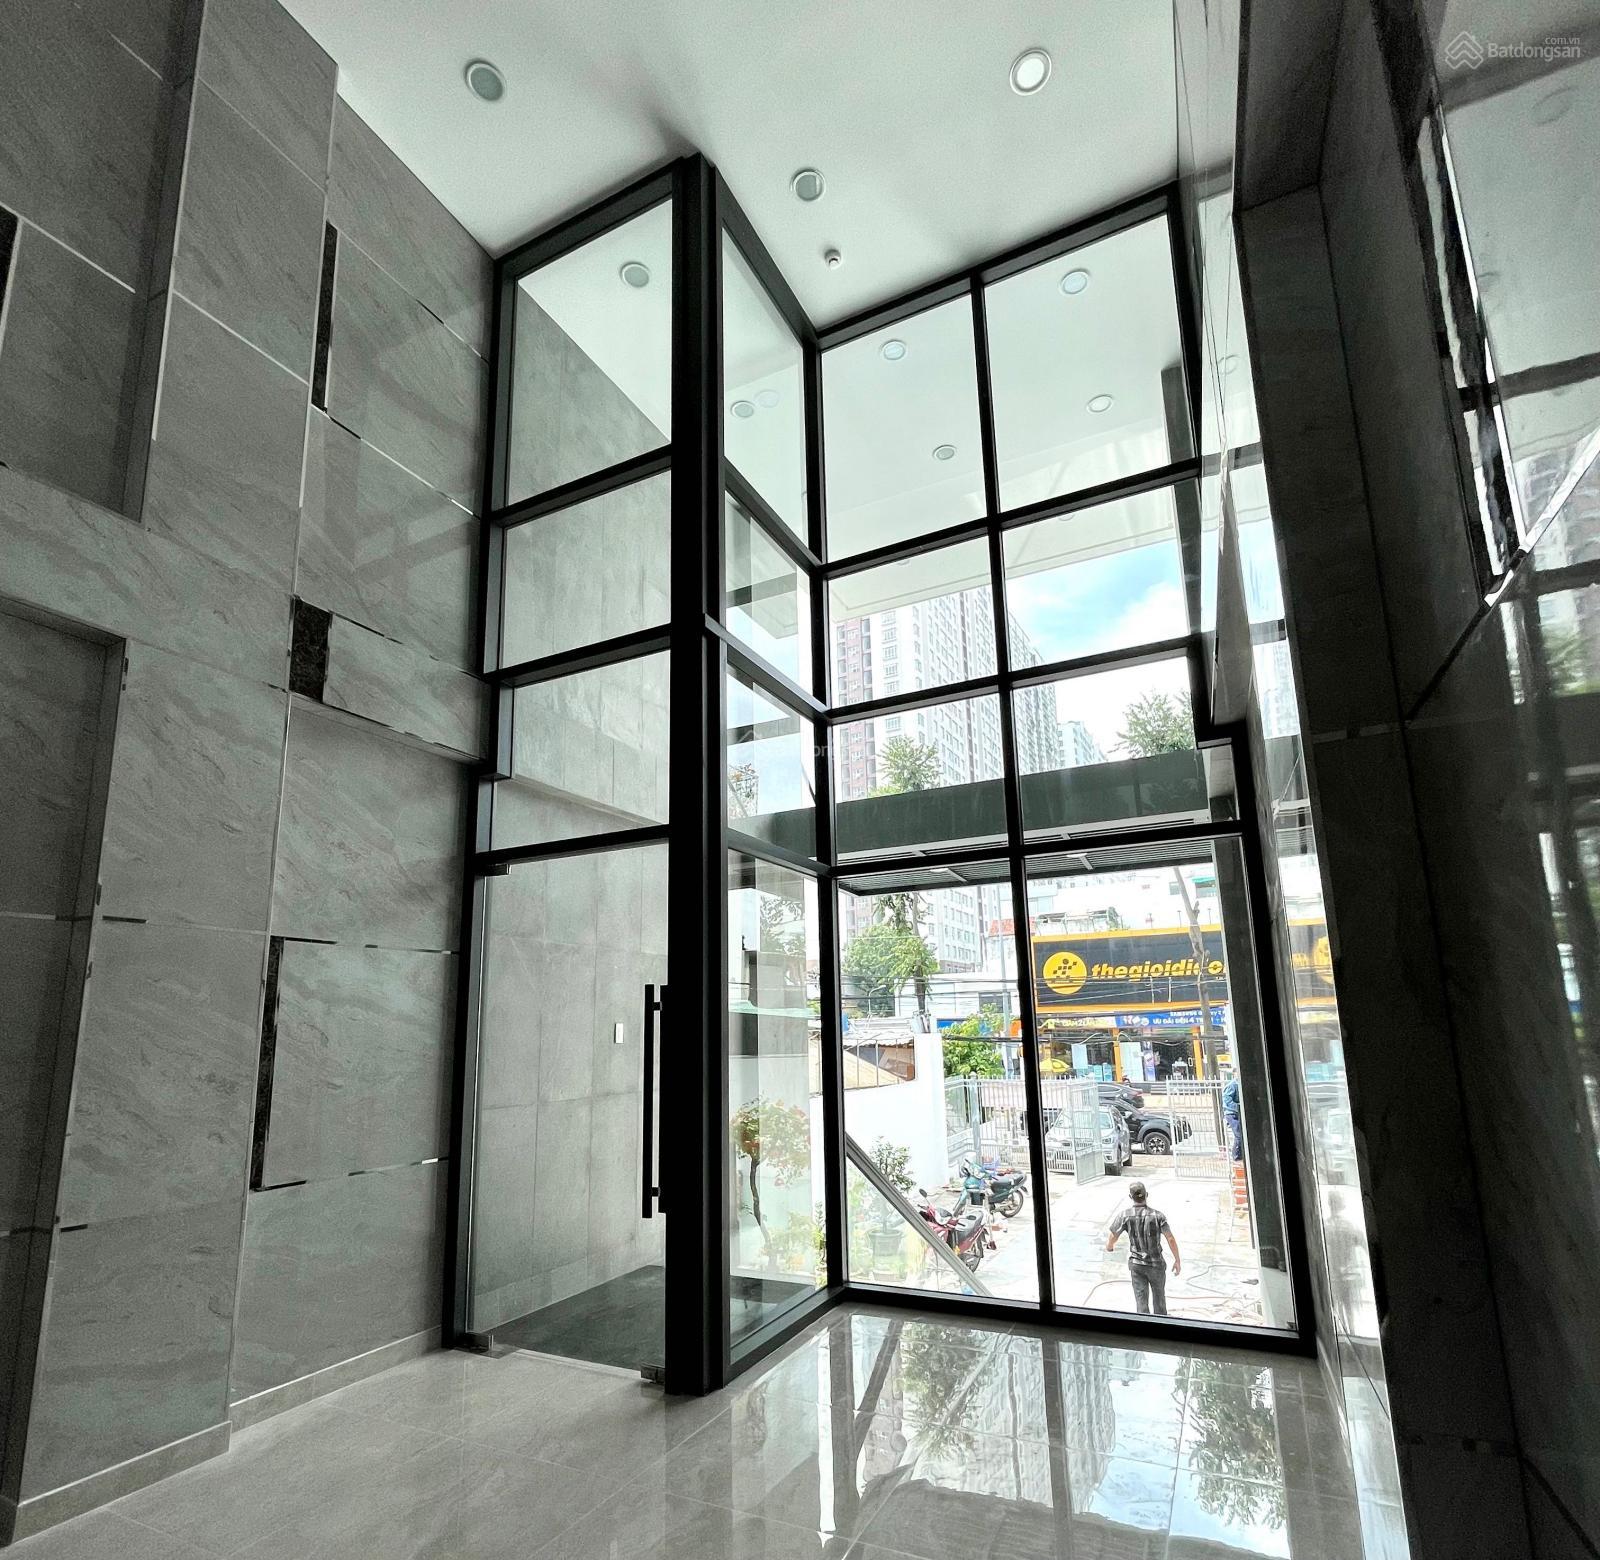 MT Phạm Hùng cho thuê nhà phố 6 tầng, thang máy, tầng hầm, sân rộng. Vị trí thuận tiện kinh doanh